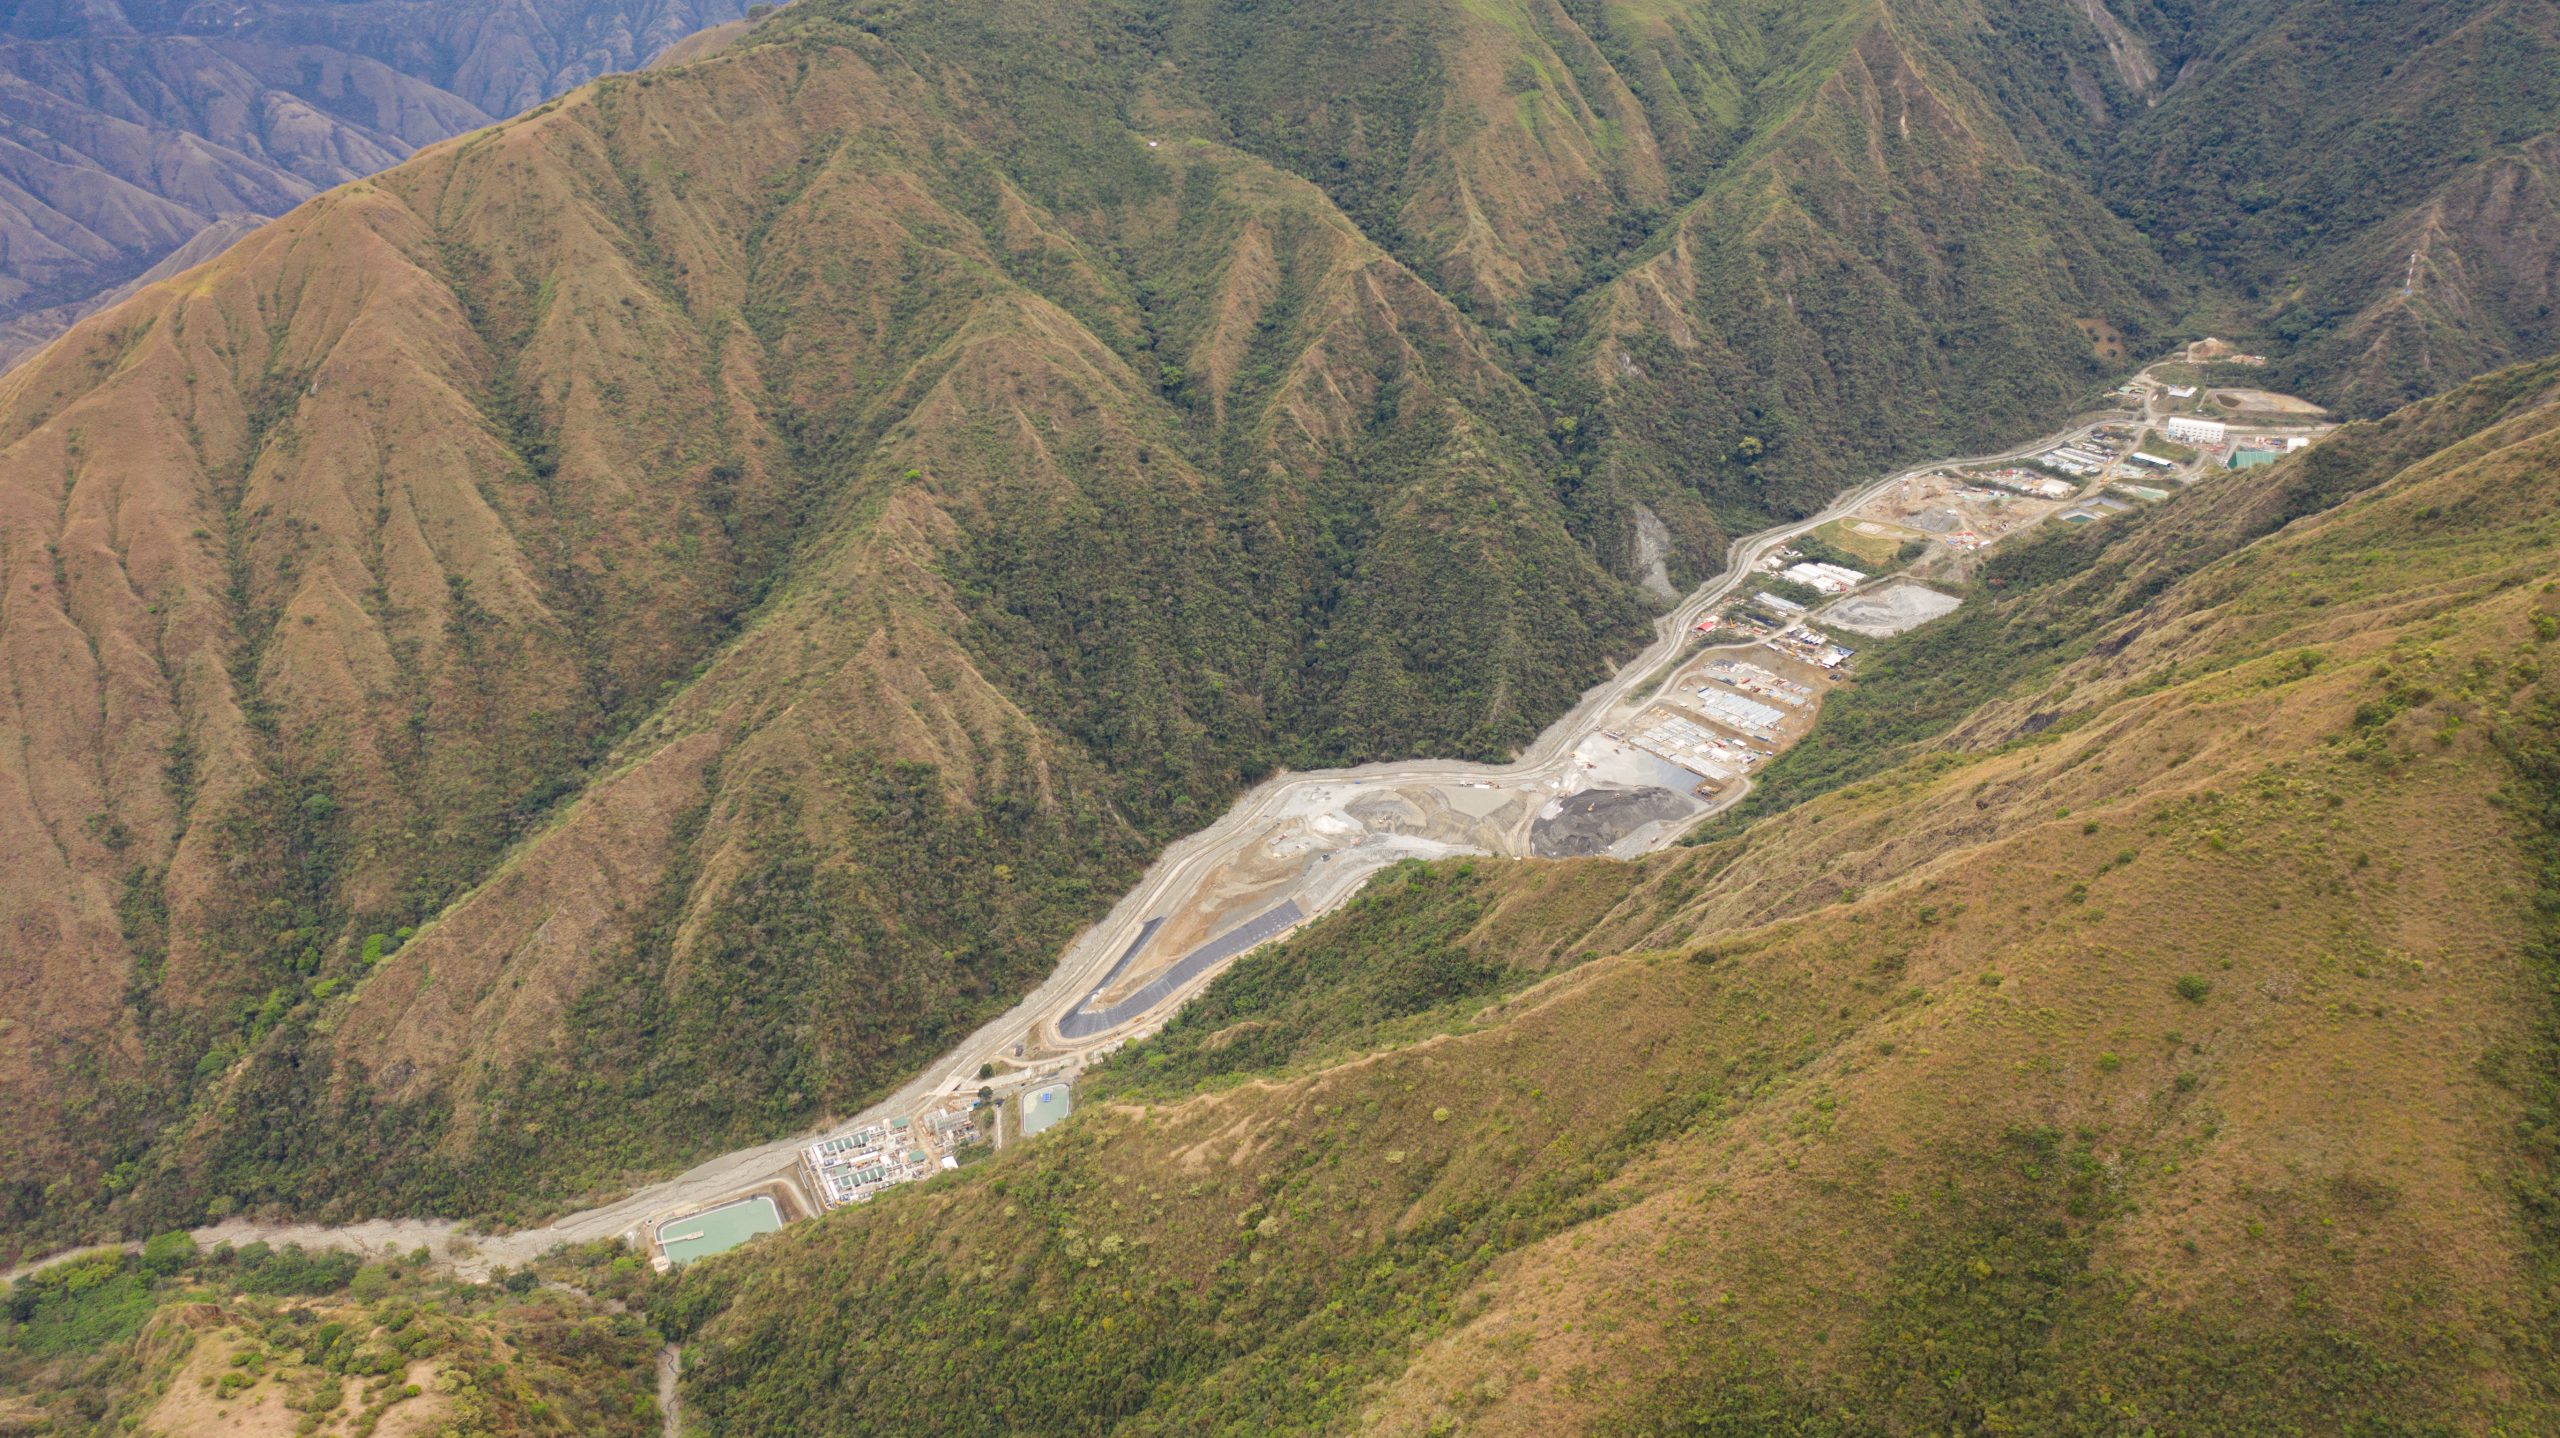 <p><span style="font-weight: 400;">A mina de ouro da chinesa Zijin está embrenhada nas colinas de Buriticá, na Colômbia. Comunidades locais pedem garantias de abastecimento de água e regularização de trabalhadores informais (imagem: Ernst Udo Drawert / Diálogo Chino)</span></p>